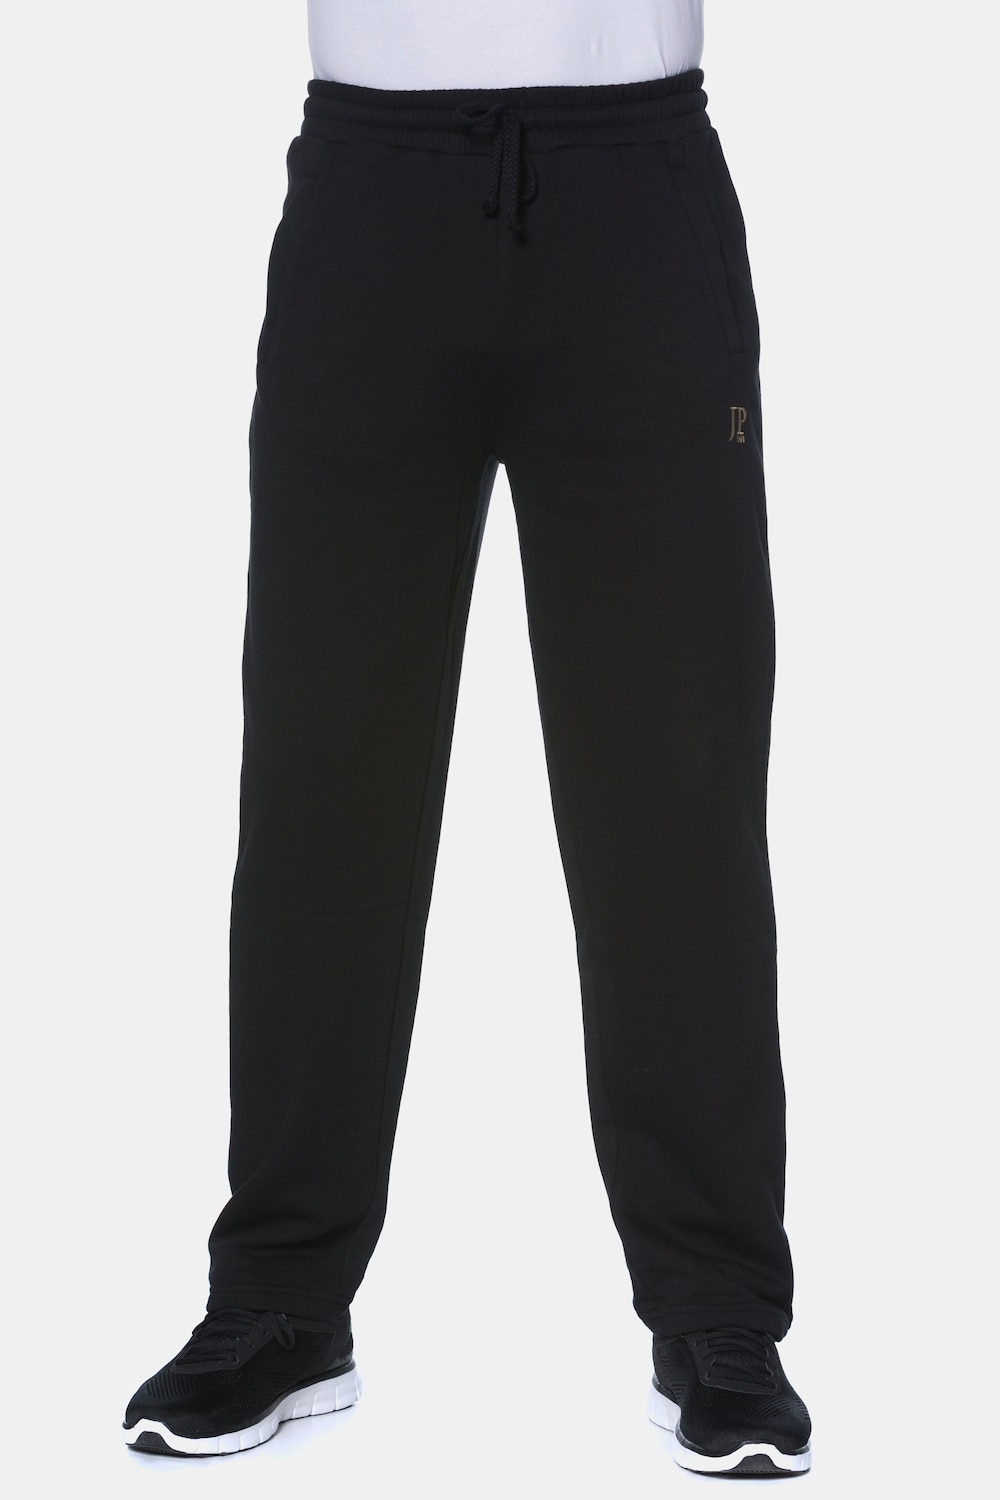 Große Größen Jogginghose, Herren, schwarz, Größe: XL, Baumwolle/Polyester, JP1880 von JP1880